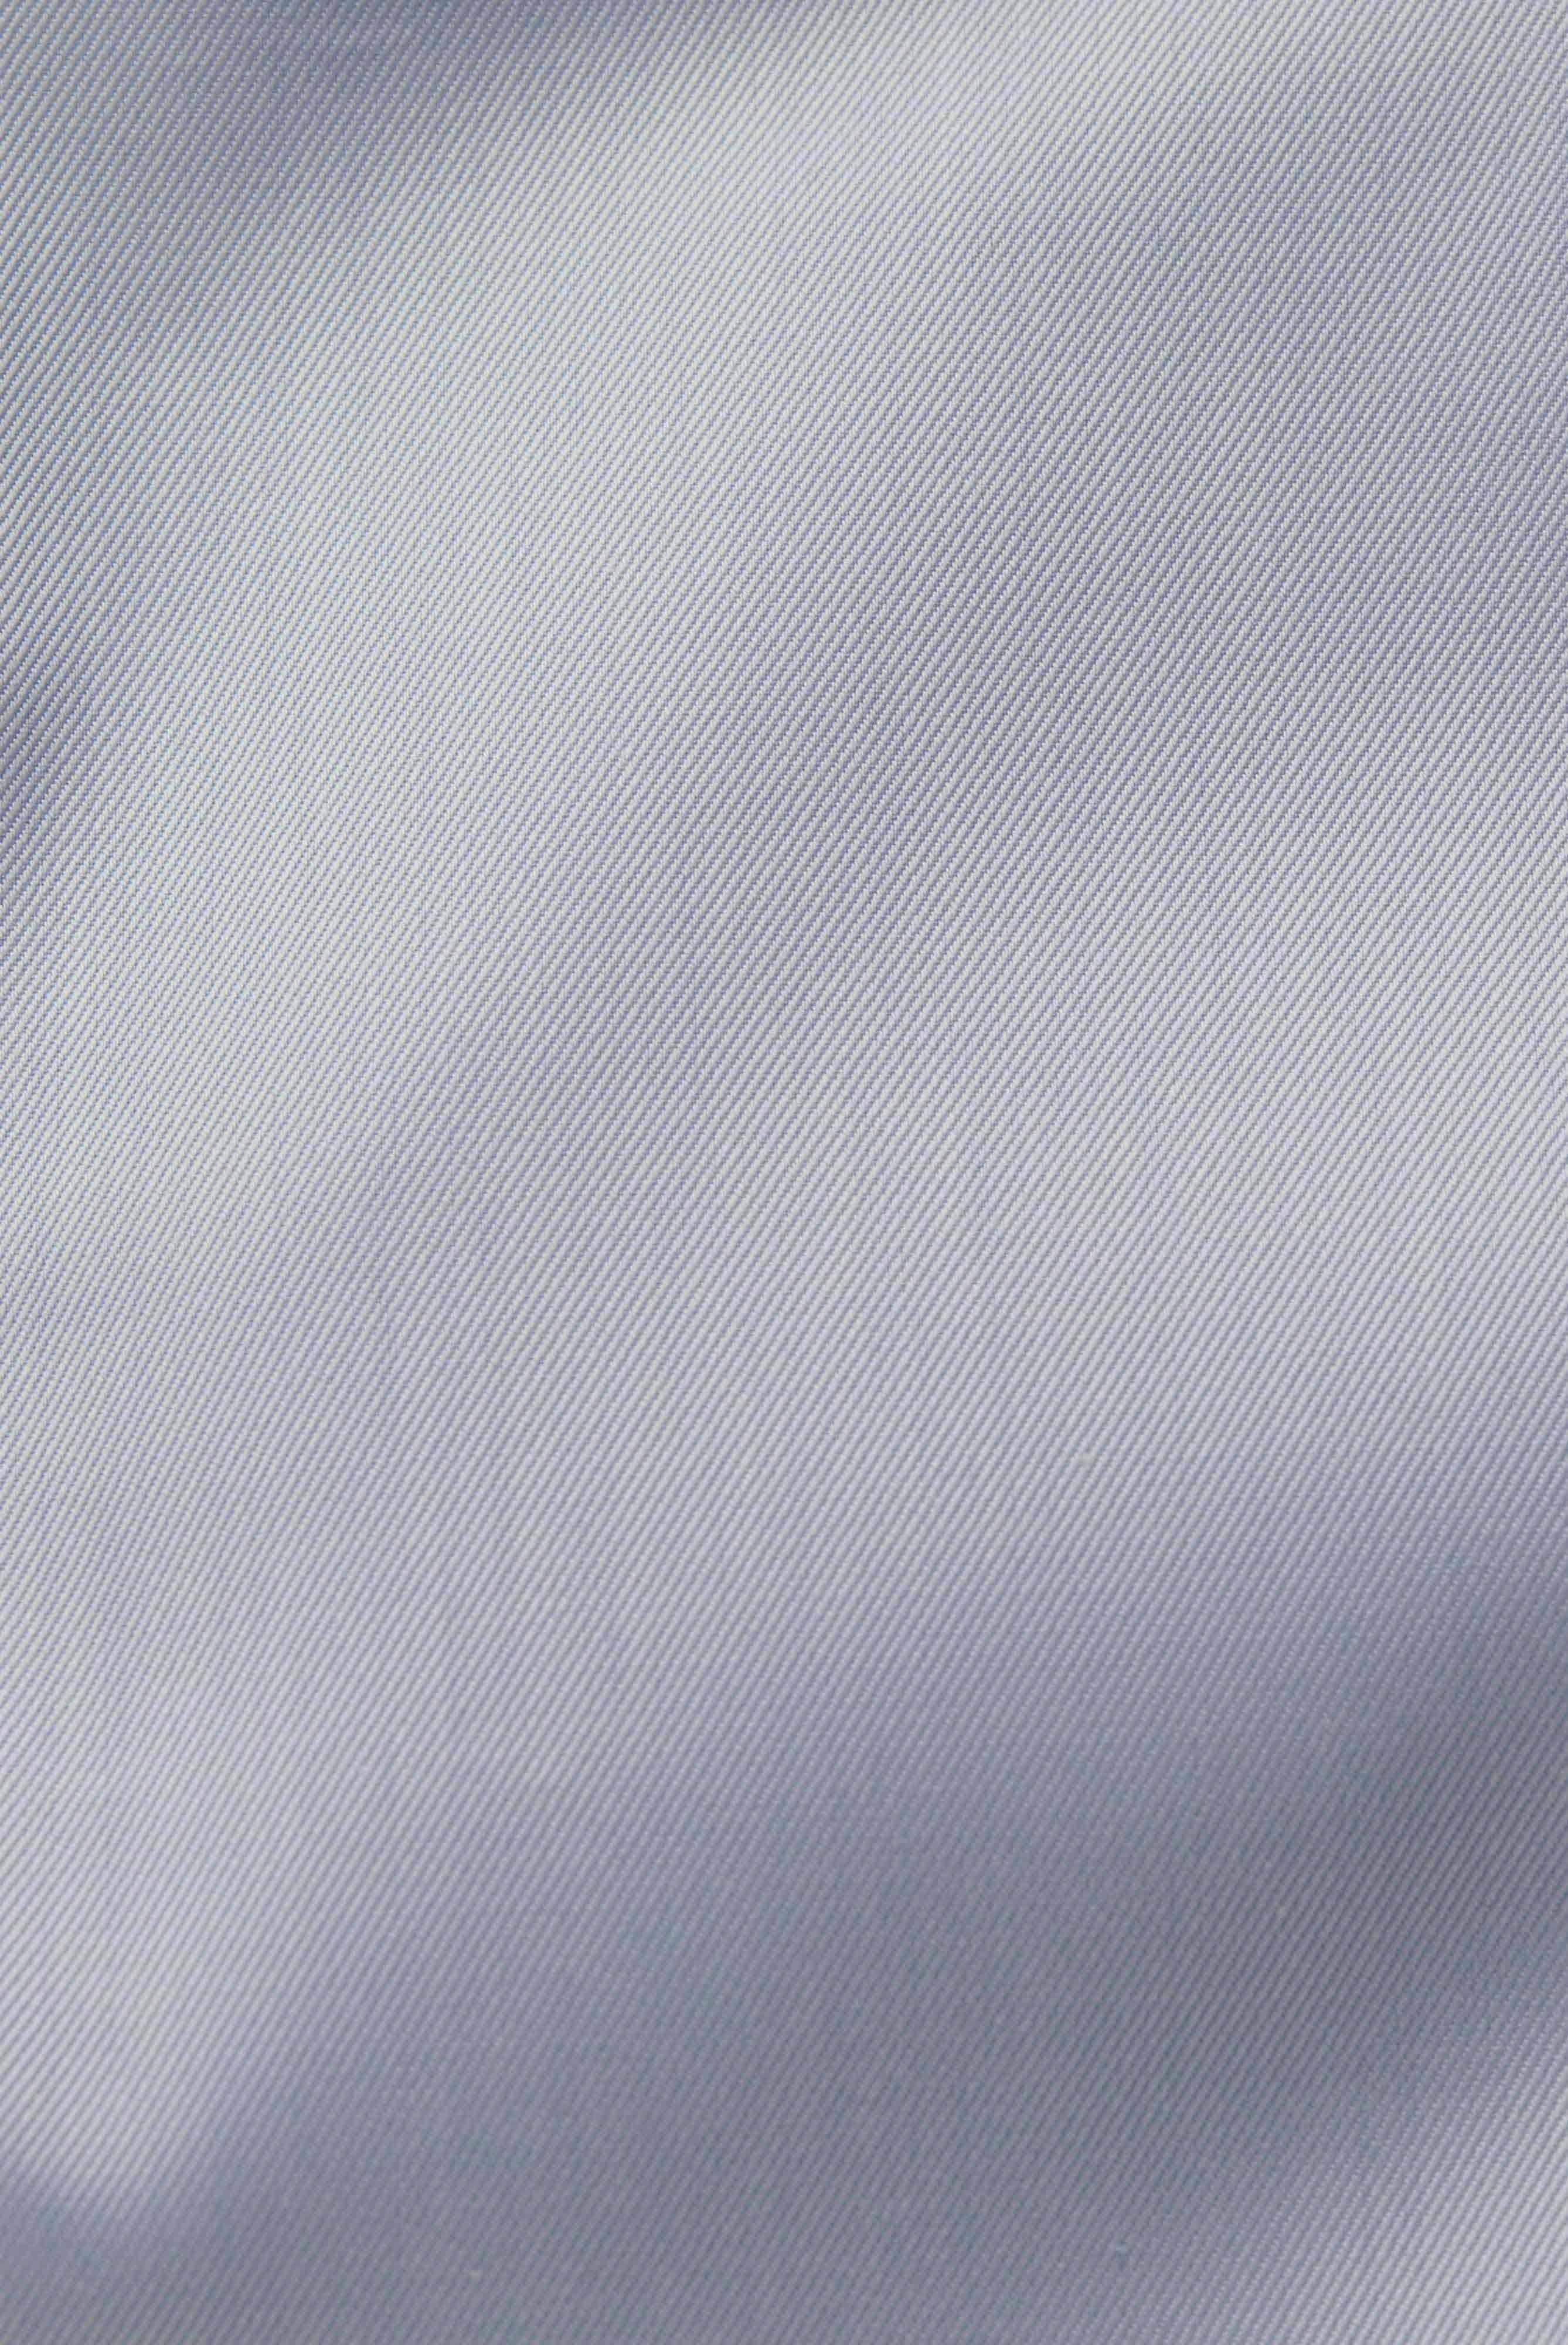 Bügelleichte Hemden+Bügelfreies Twill Hemd Comfort Fit+20.2046.BQ.132241.720.45